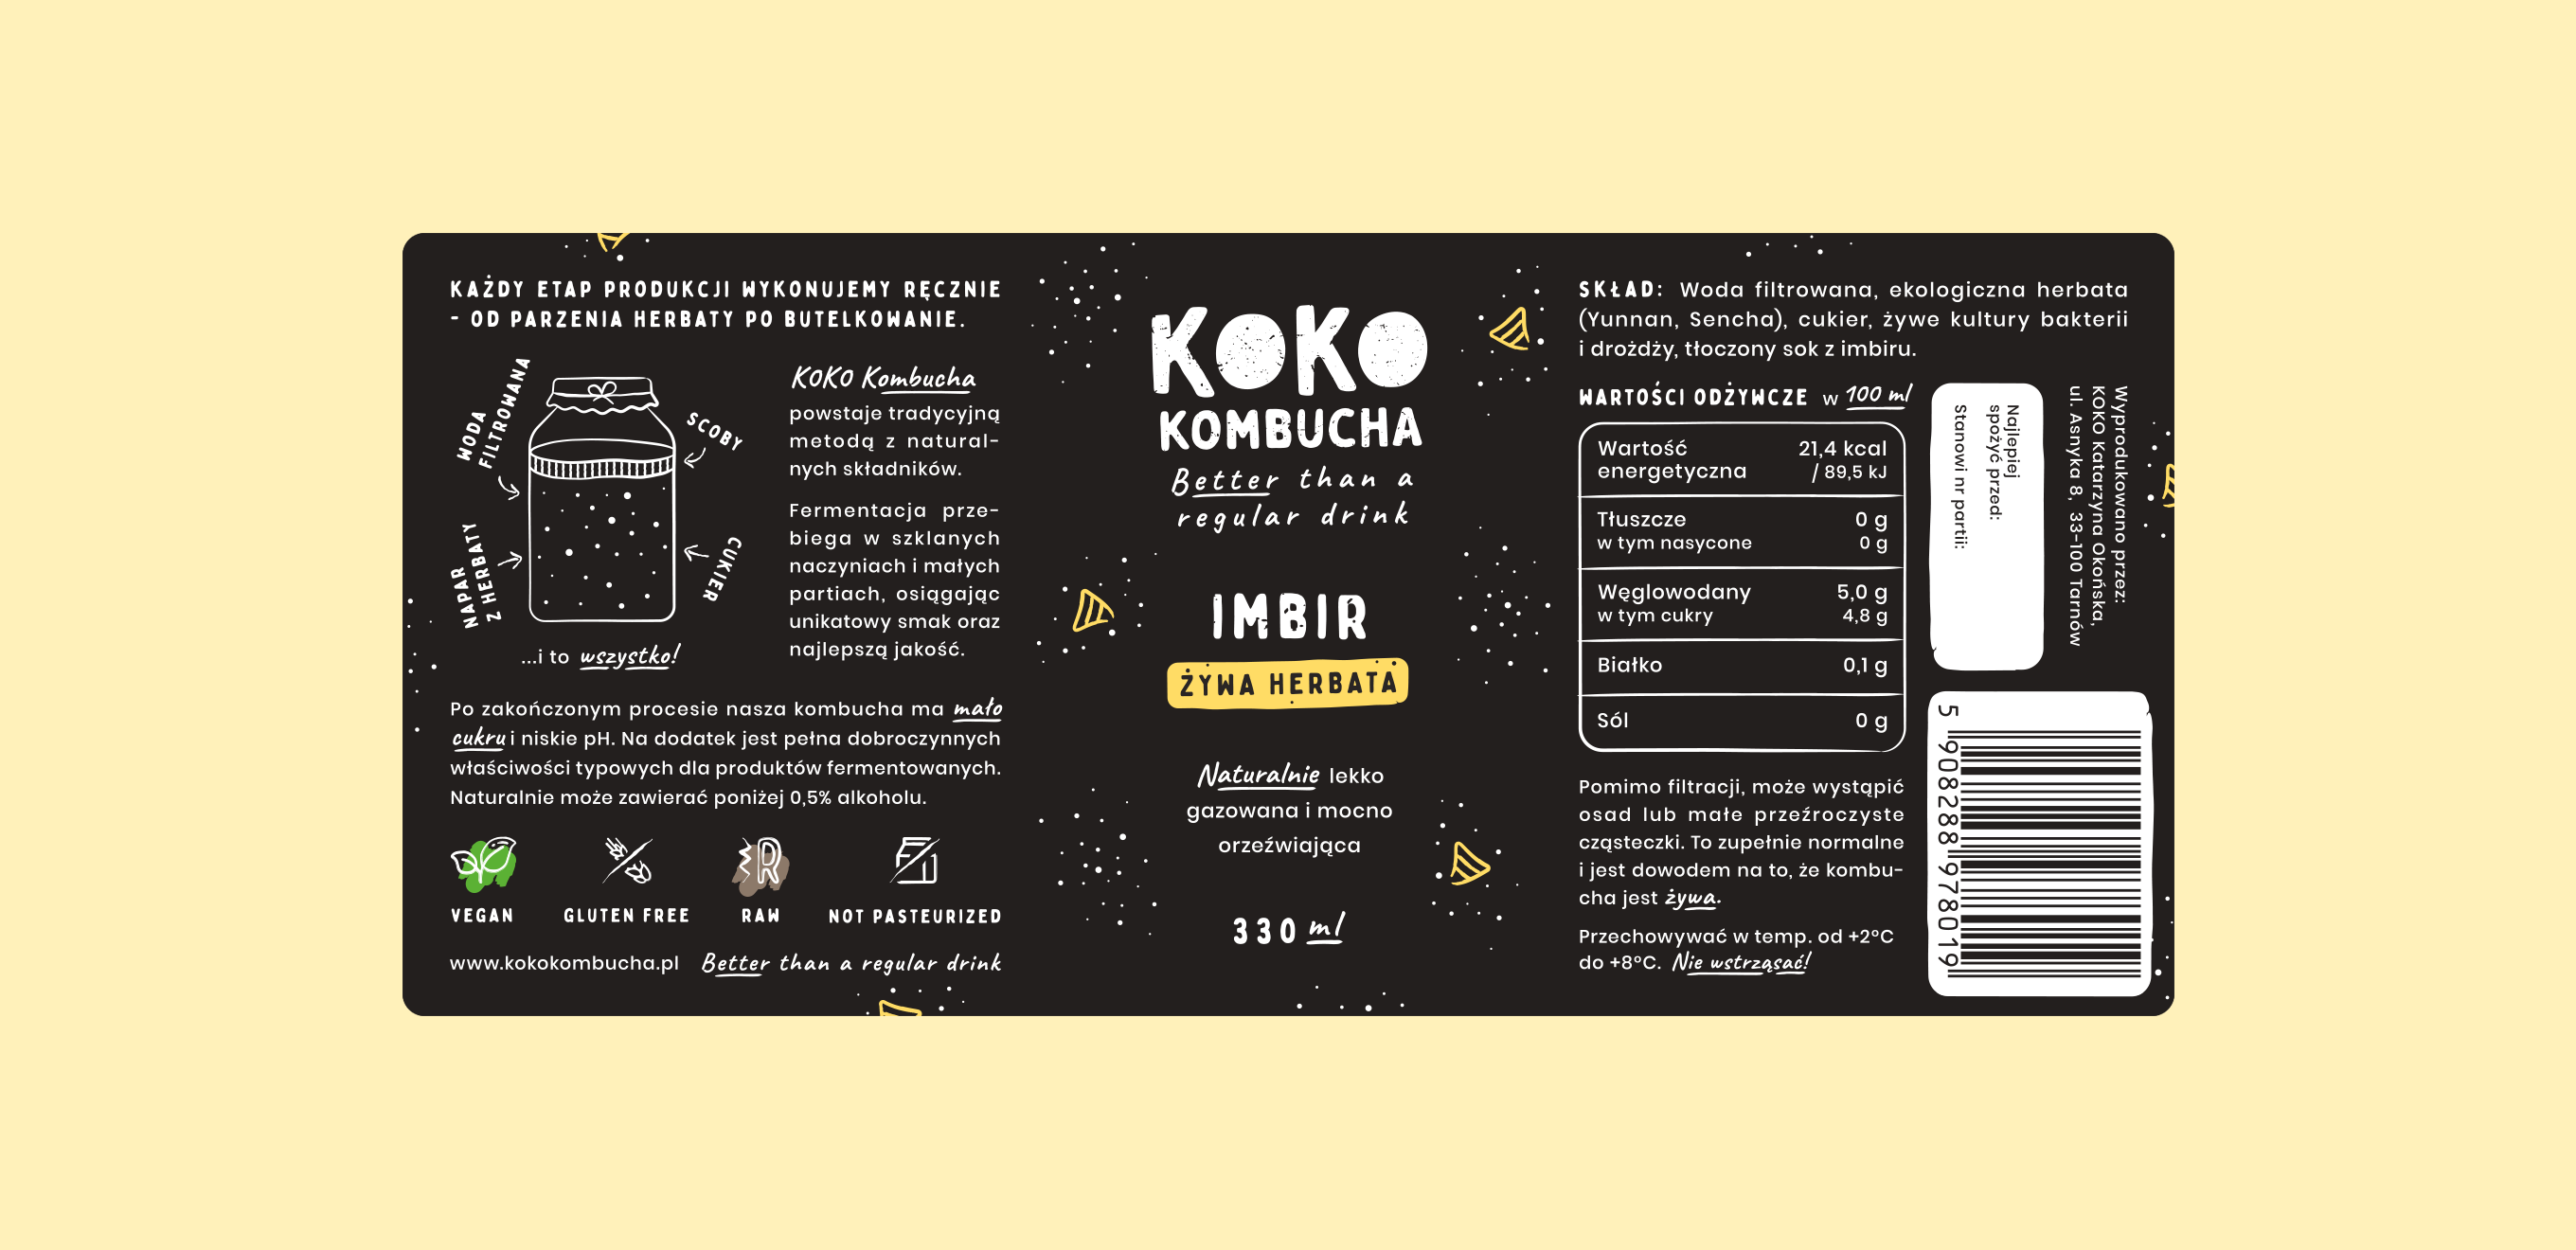 KOKO Kombucha - Etykieta Imbir